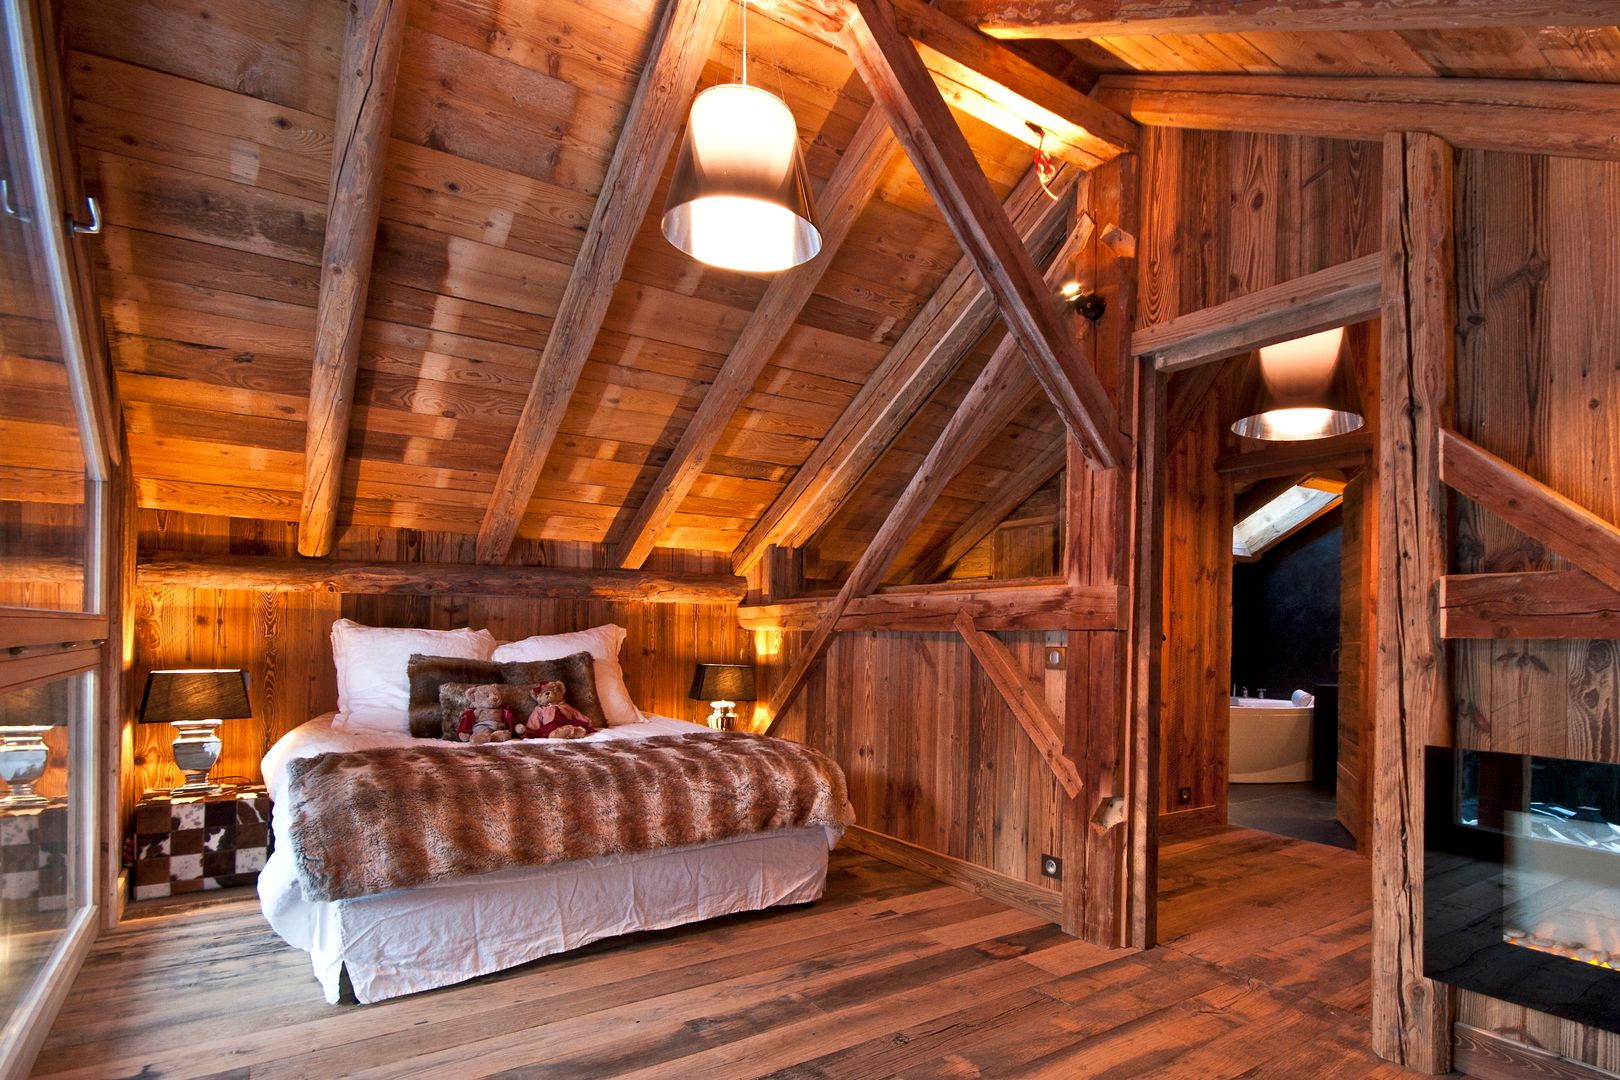 Chalet de Claude: un chalet de luxe, mais distinctif avec un intérieur en rouge et noir, shep&kyles design shep&kyles design Country style bedroom